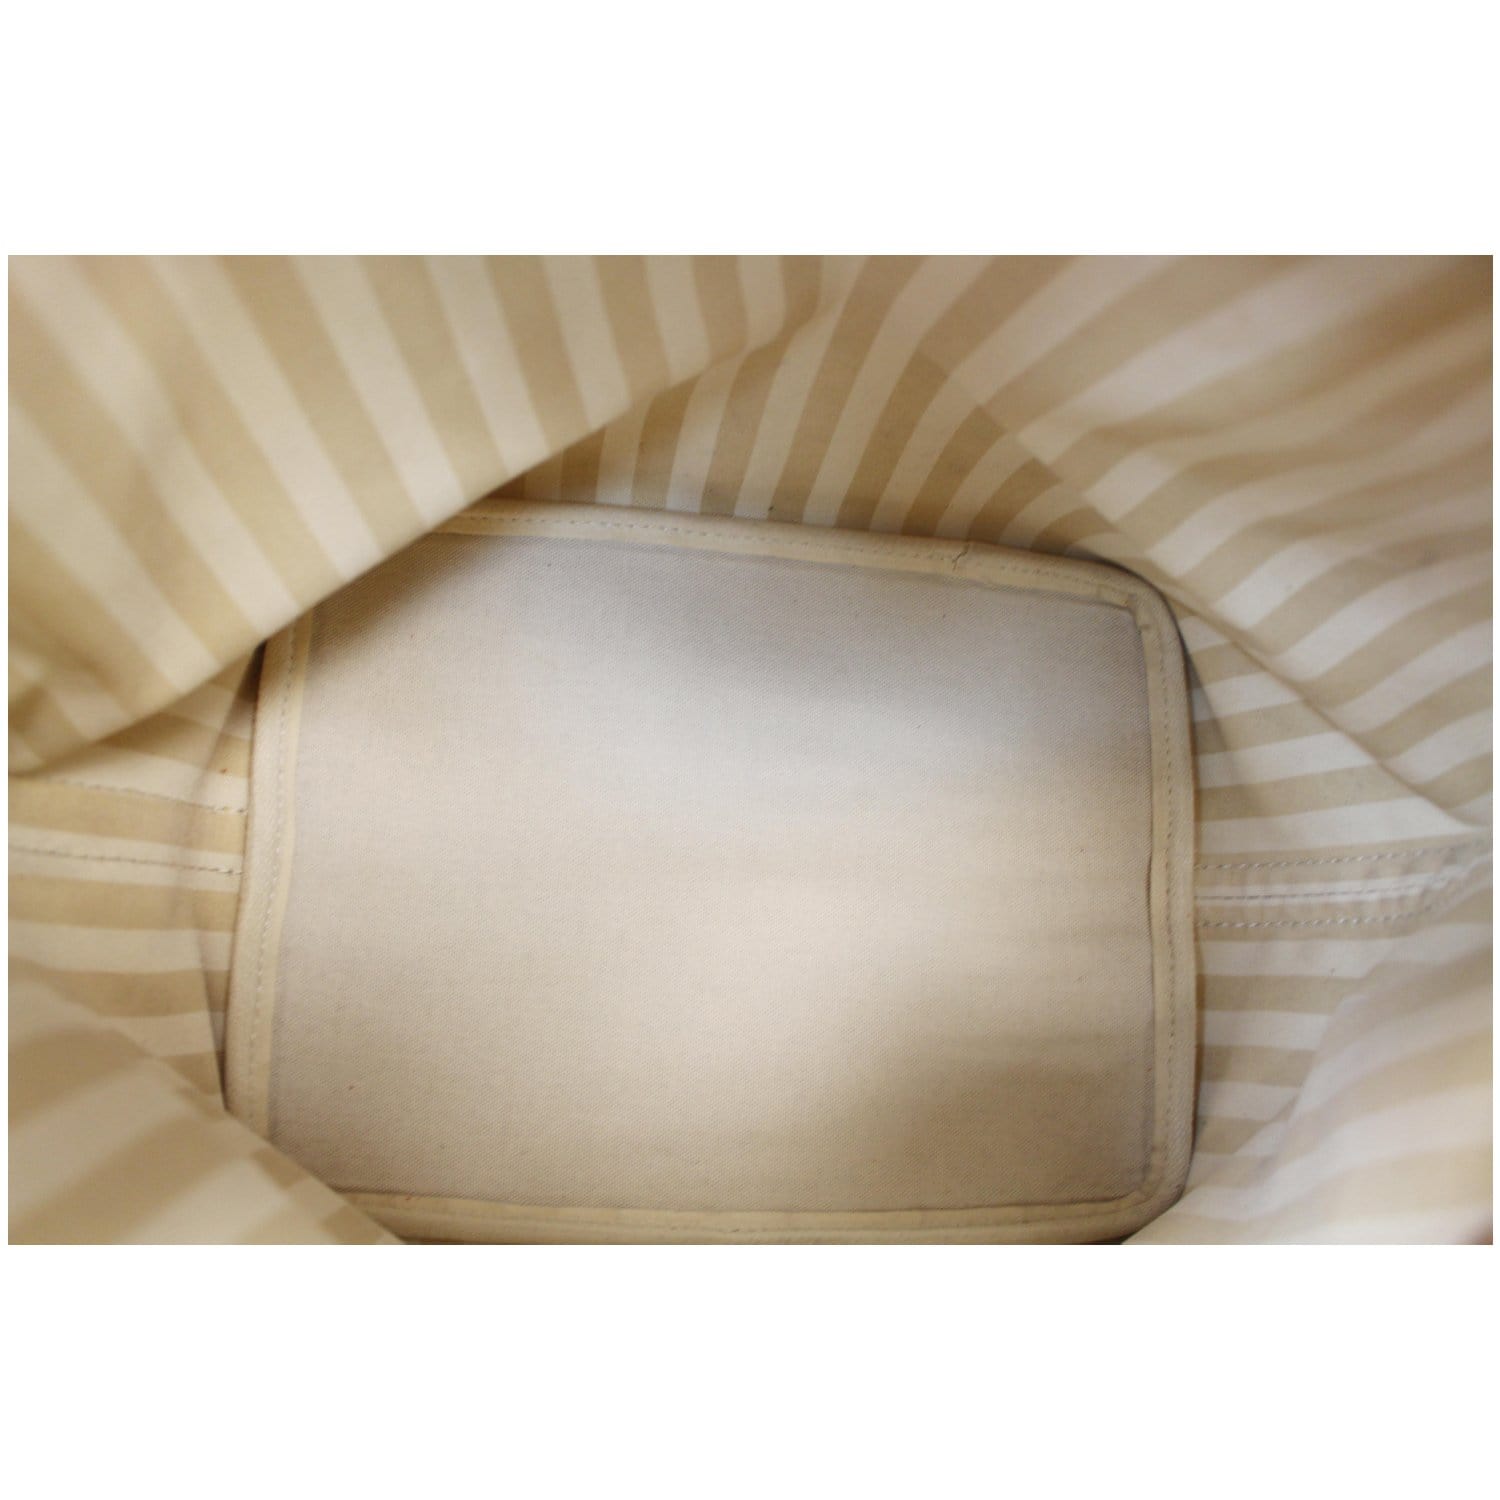 Louis Vuitton Stripe Monogram Rayures Petit Noe Drawstring Bucket Hobo Bag  11lv1101